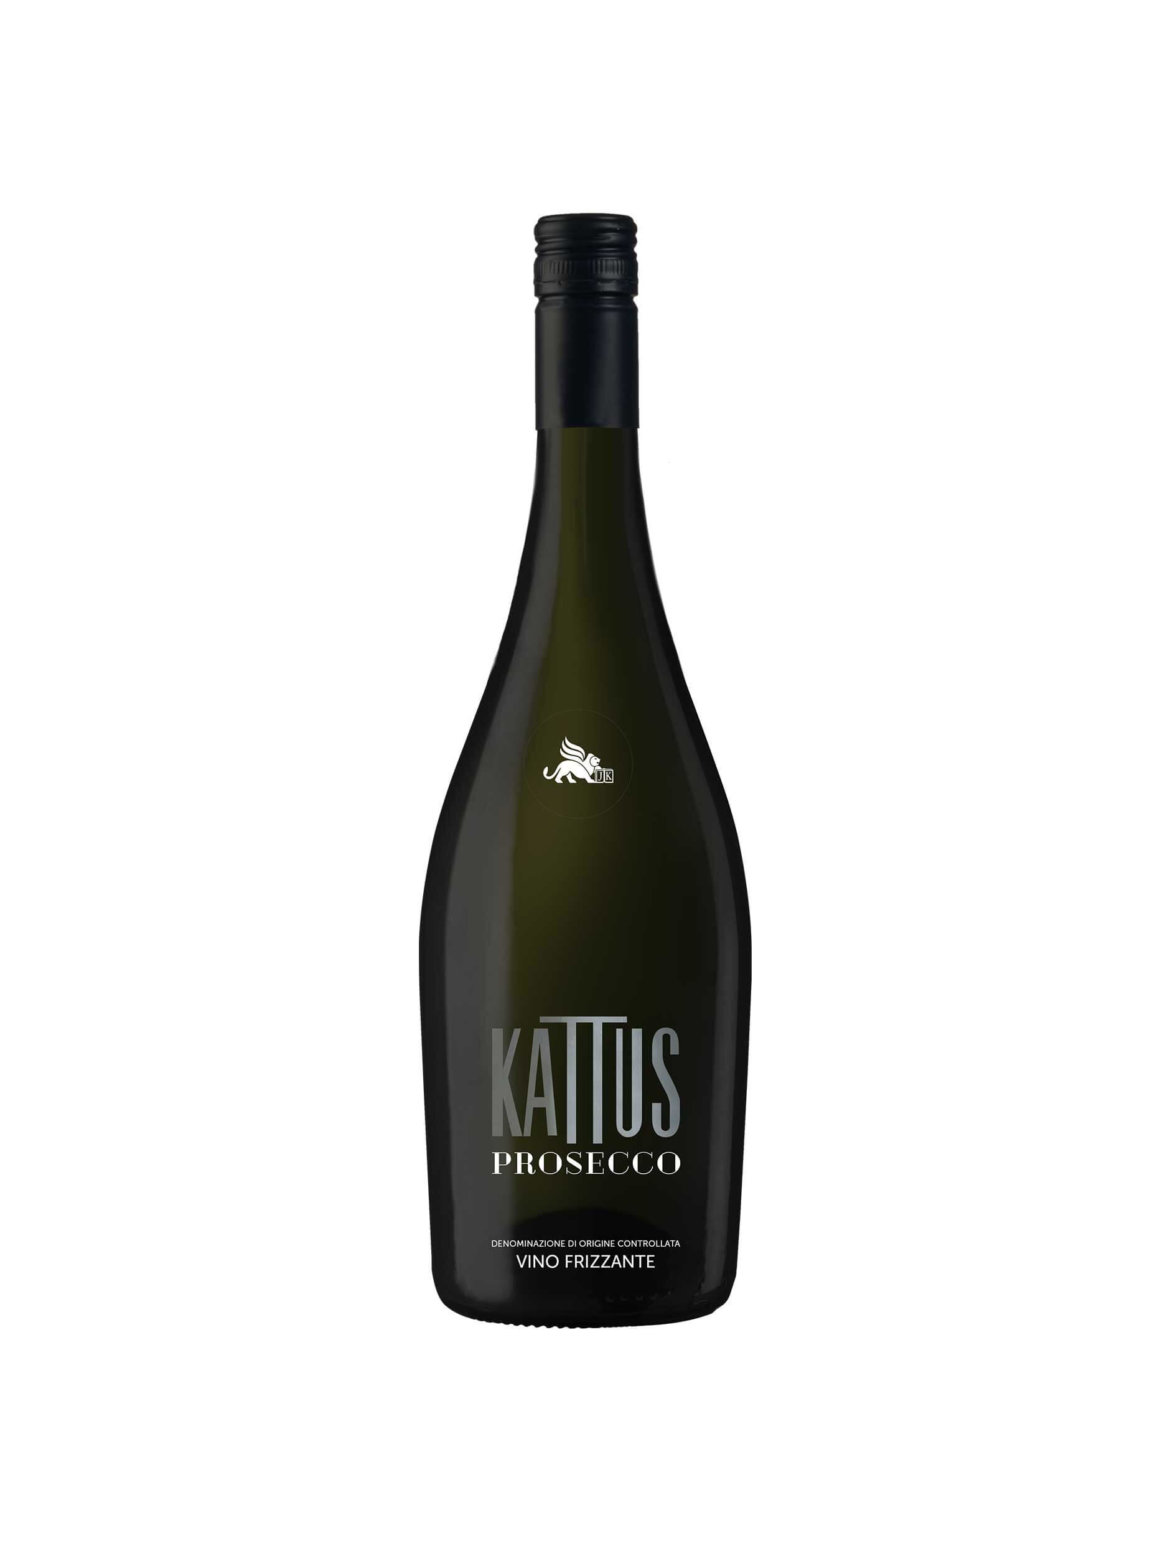 kattus-prosecco-vino-frizzante-doc.jpg